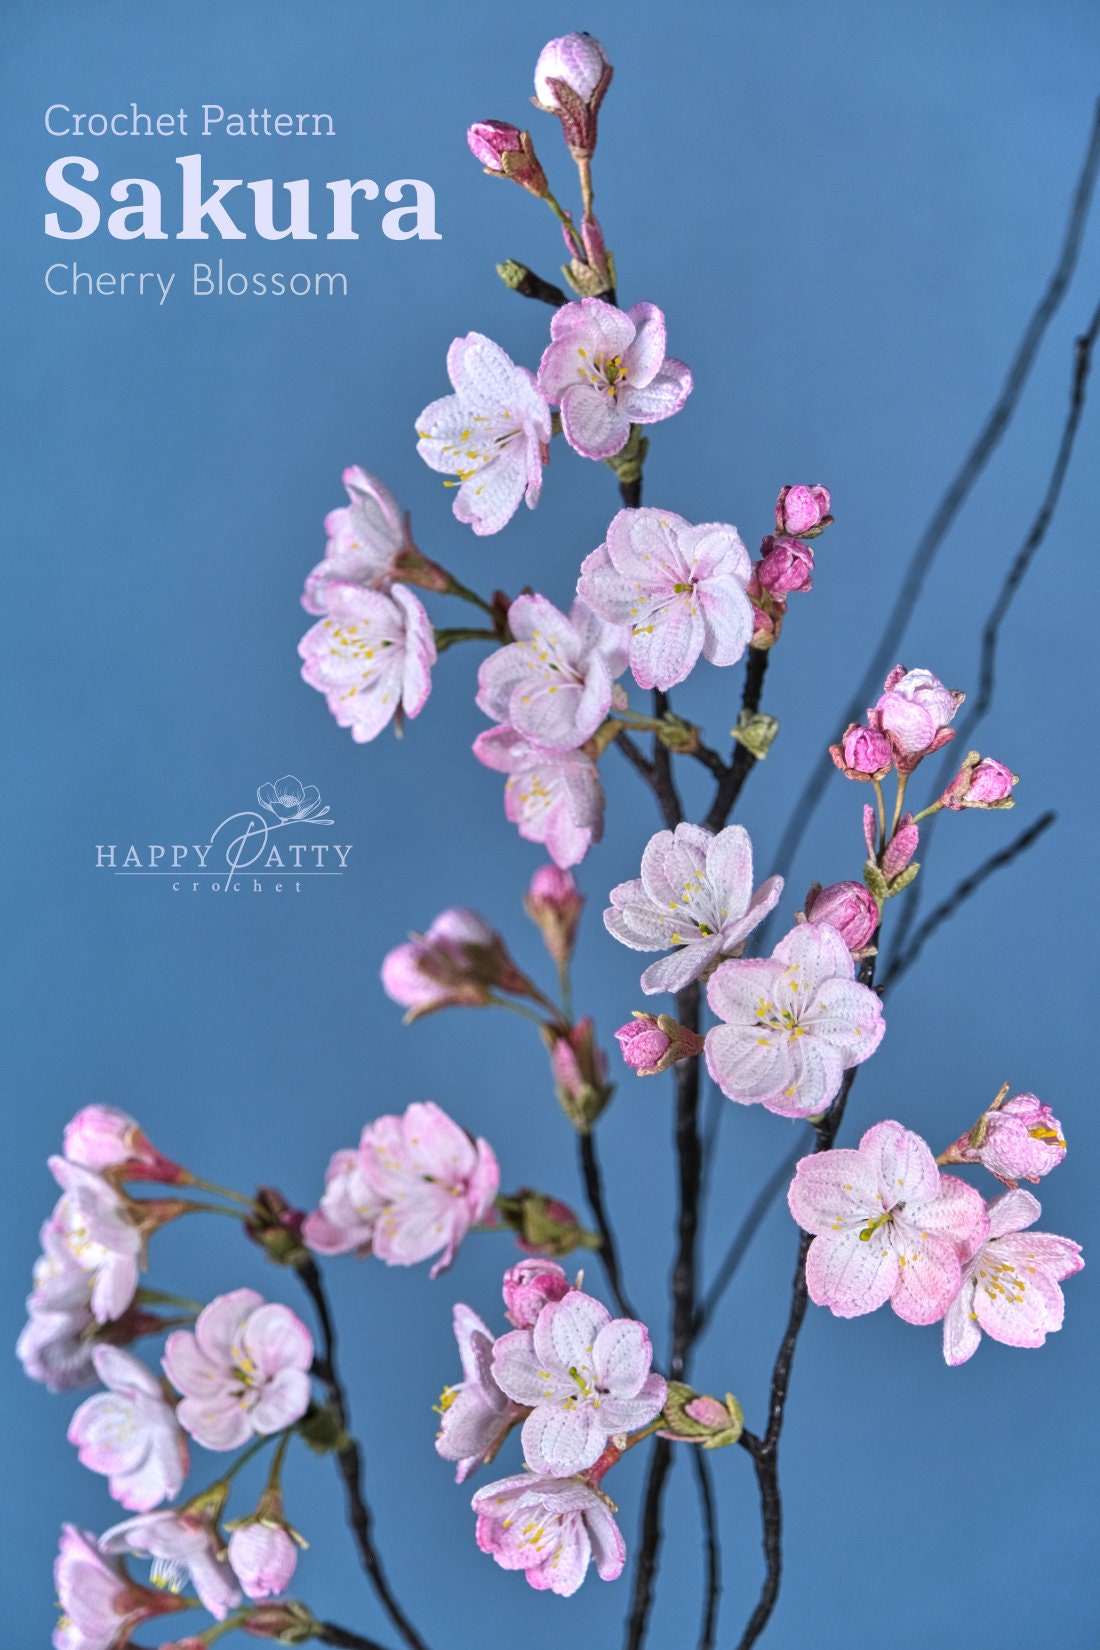 Sakura Crochet Pattern - Crochet Flower Pattern for a Cherry Blossom Flower